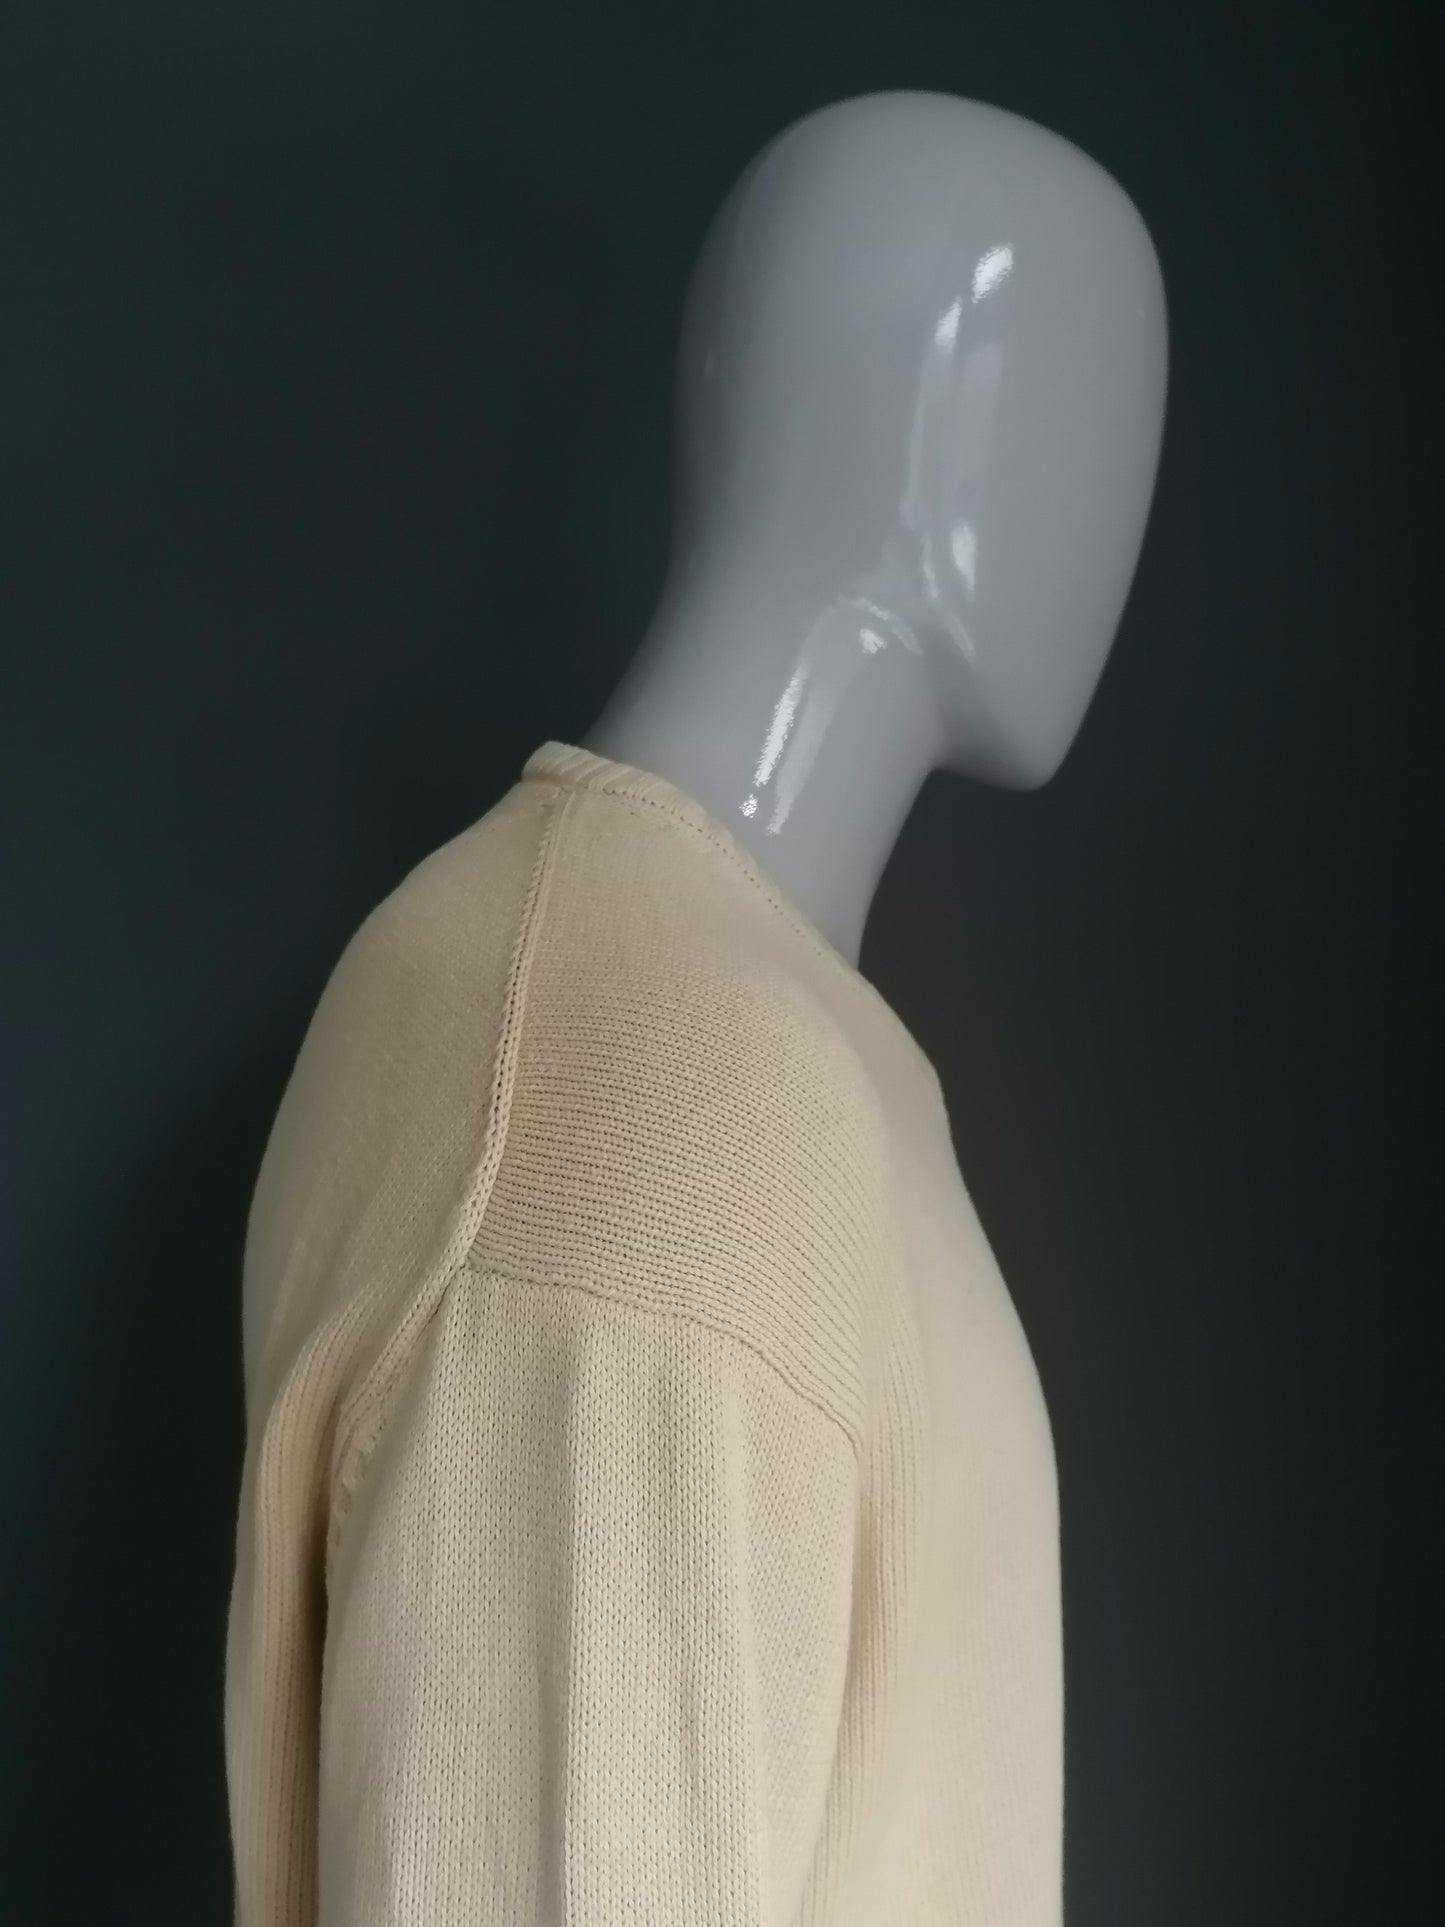 NY Coton Cotton Pullover mit V-Ausschnitt. Gelb gefärbt. Größe xxl / 2xl.